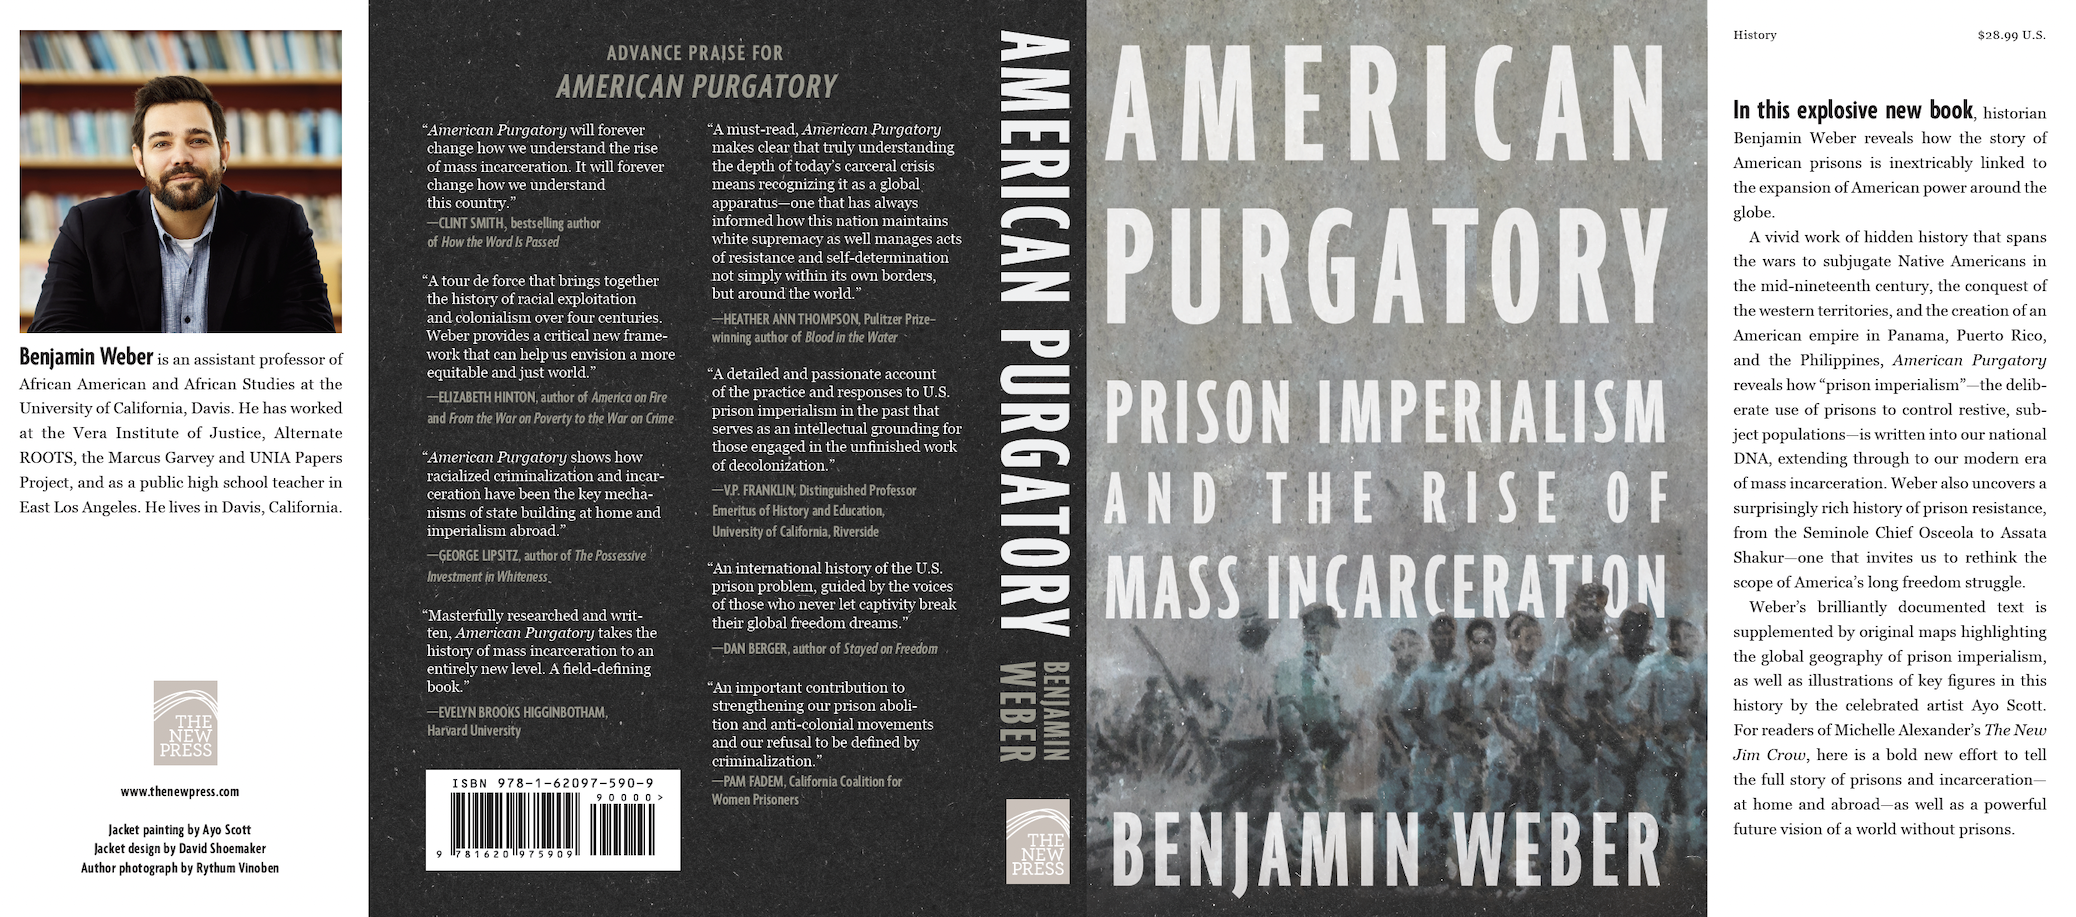 Book cover, American purgatory, Benjamin weber